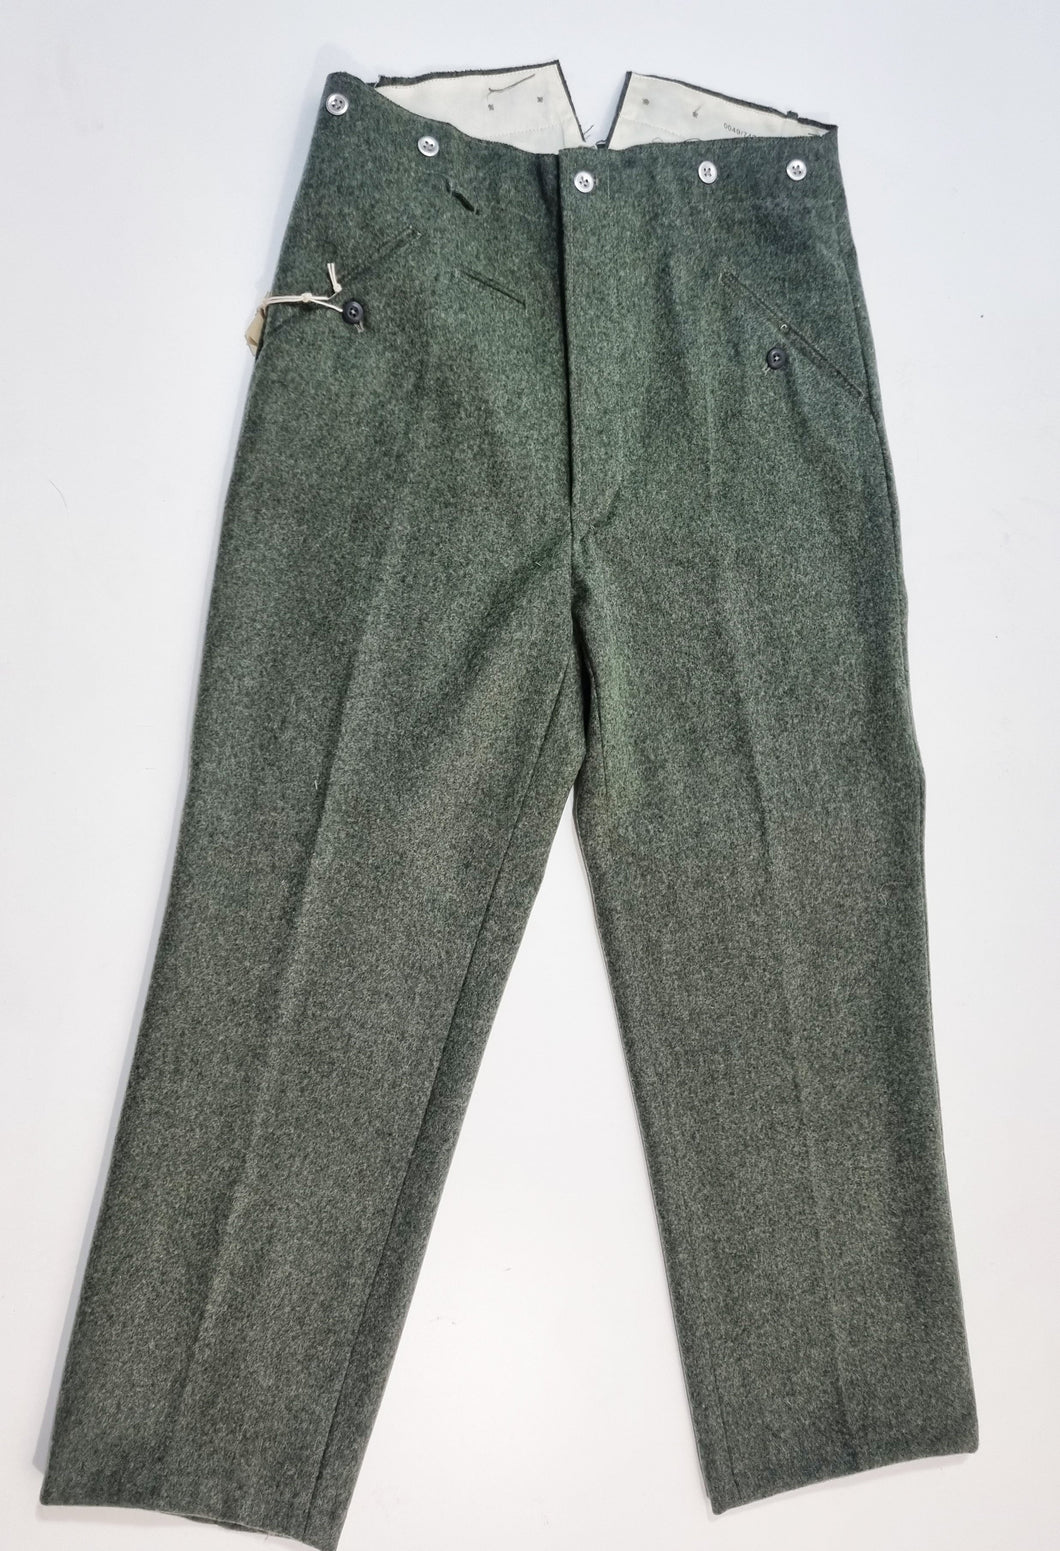 WW2 Riproduzione Pantalone Esercito Tedesco mod 40 Colore feld-grau/Grün